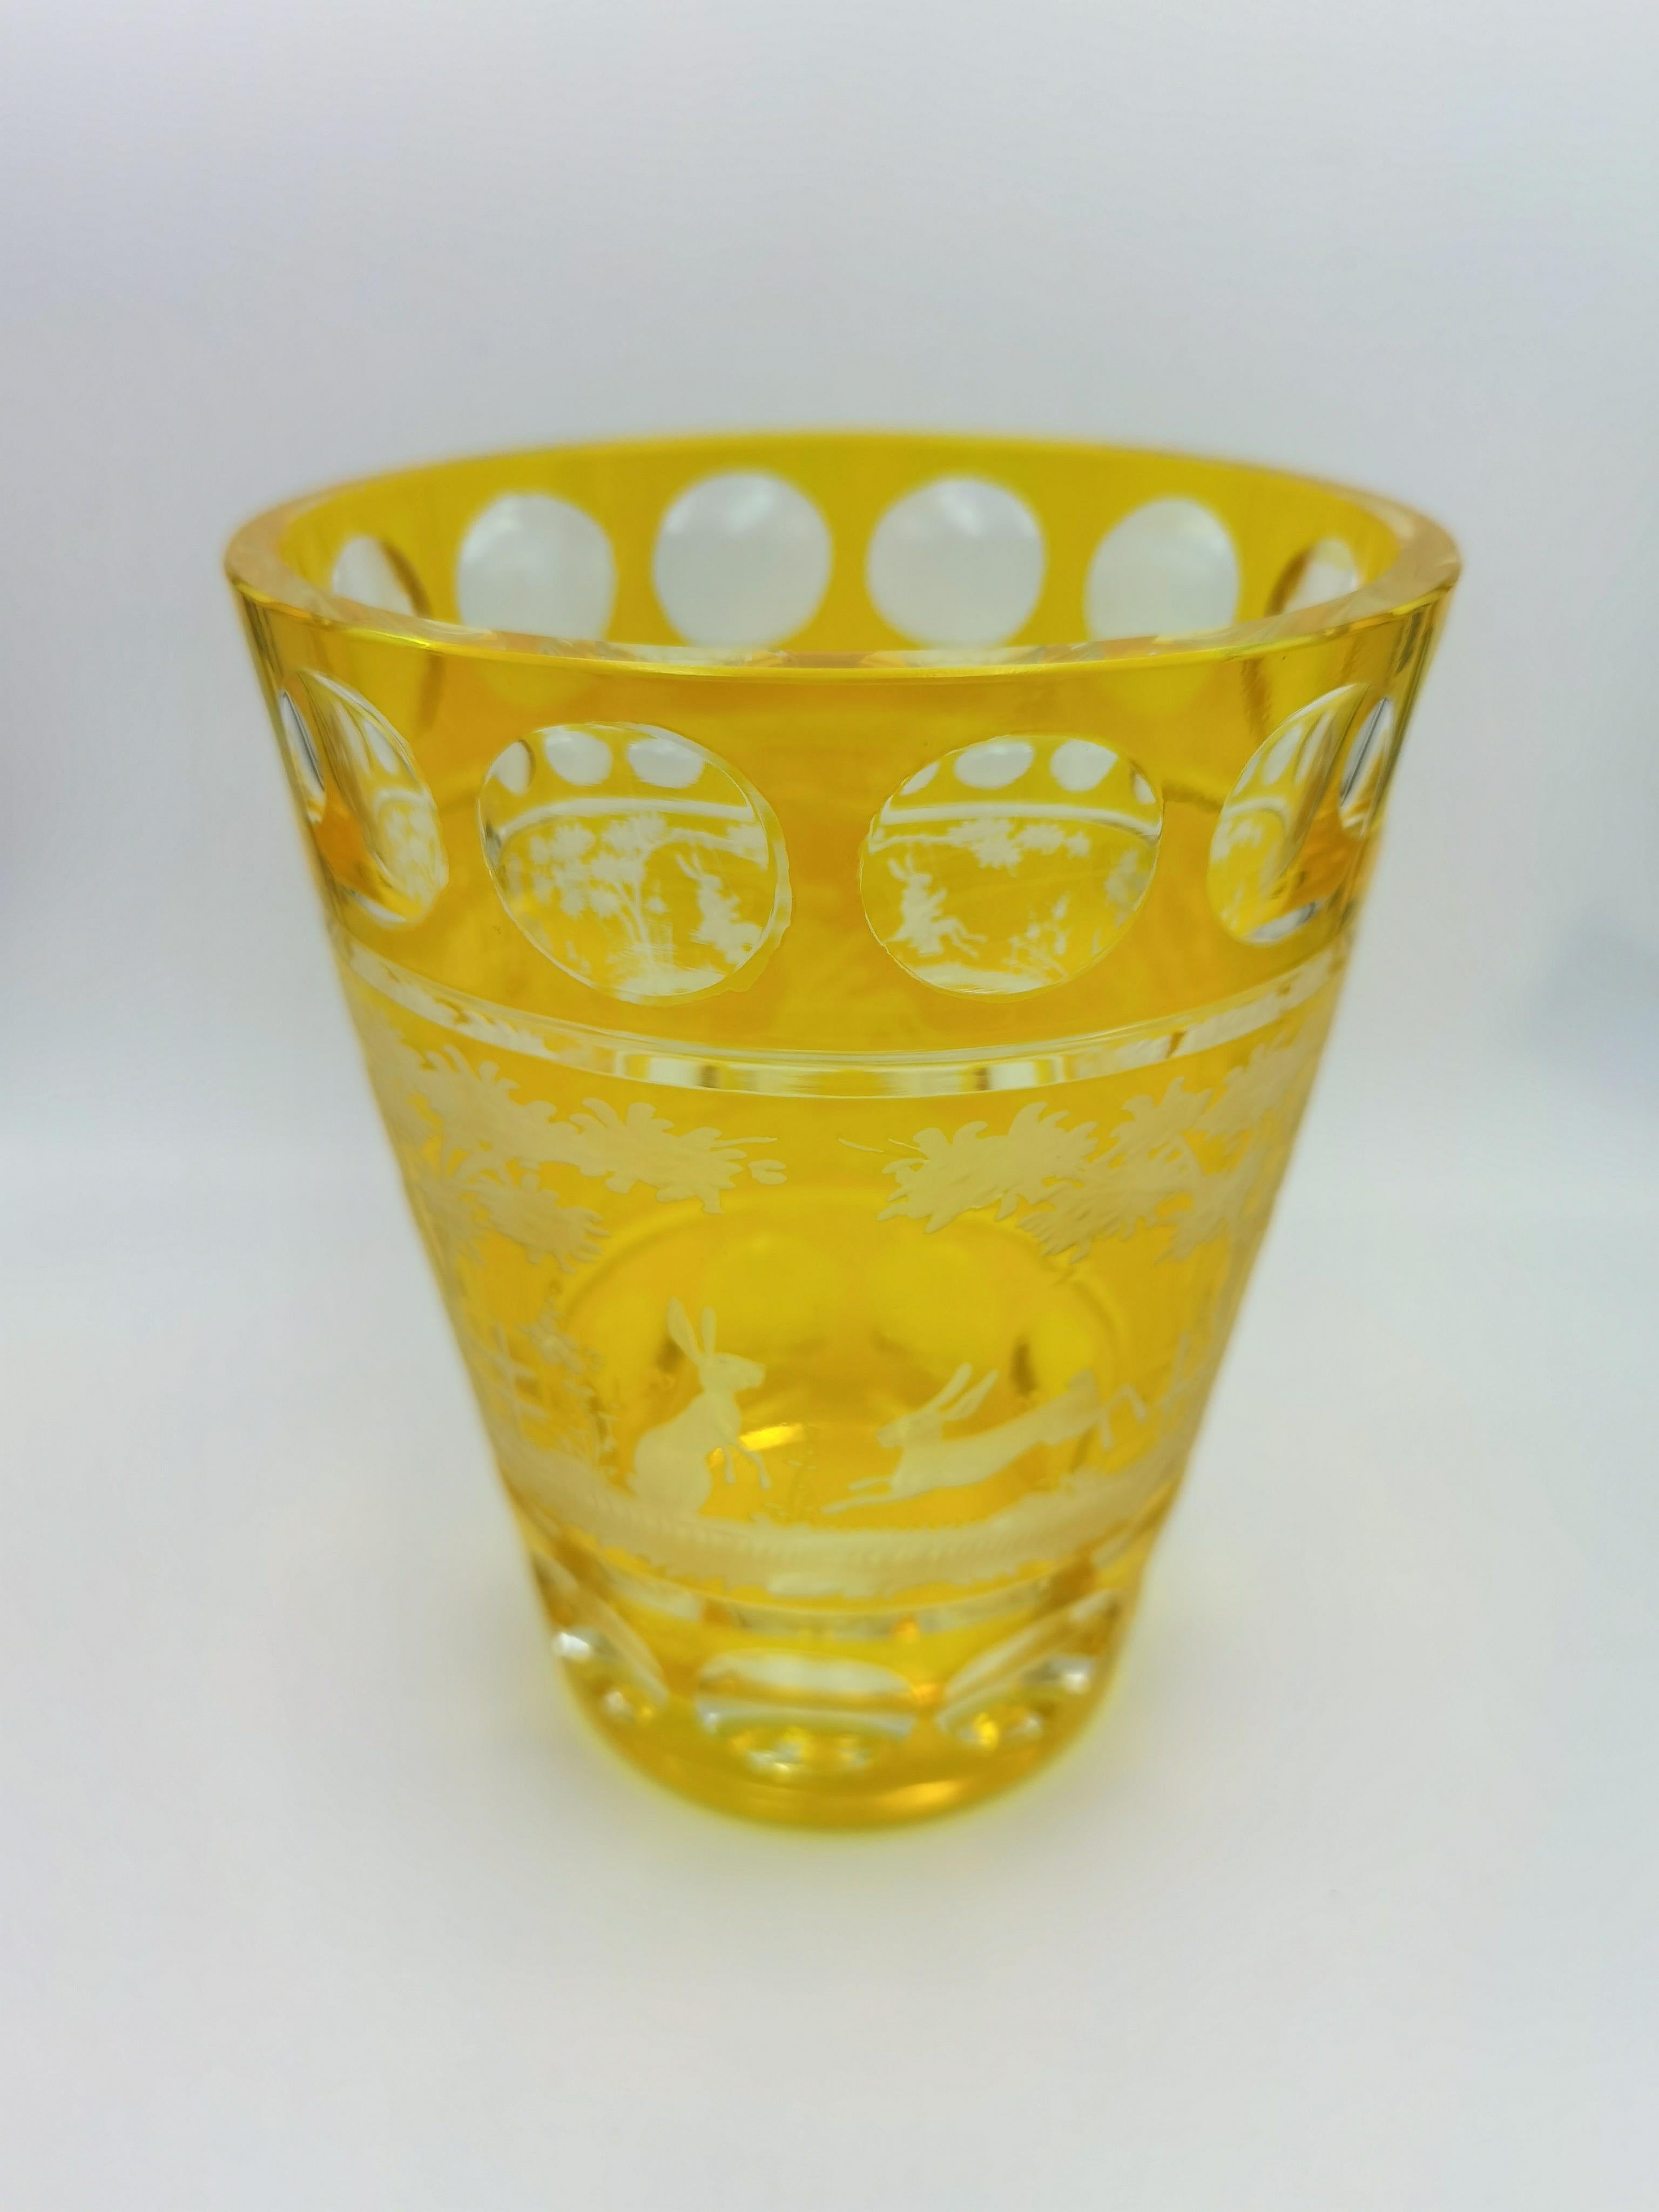 Vase en cristal soufflé à la main dans un verre jaune avec un décor de Pâques de style champêtre tout autour. Les feuilles, le lapin et les arbres sont gravés à la main par des artistes verriers en Bavière/Allemagne. Le verre présenté ici est de